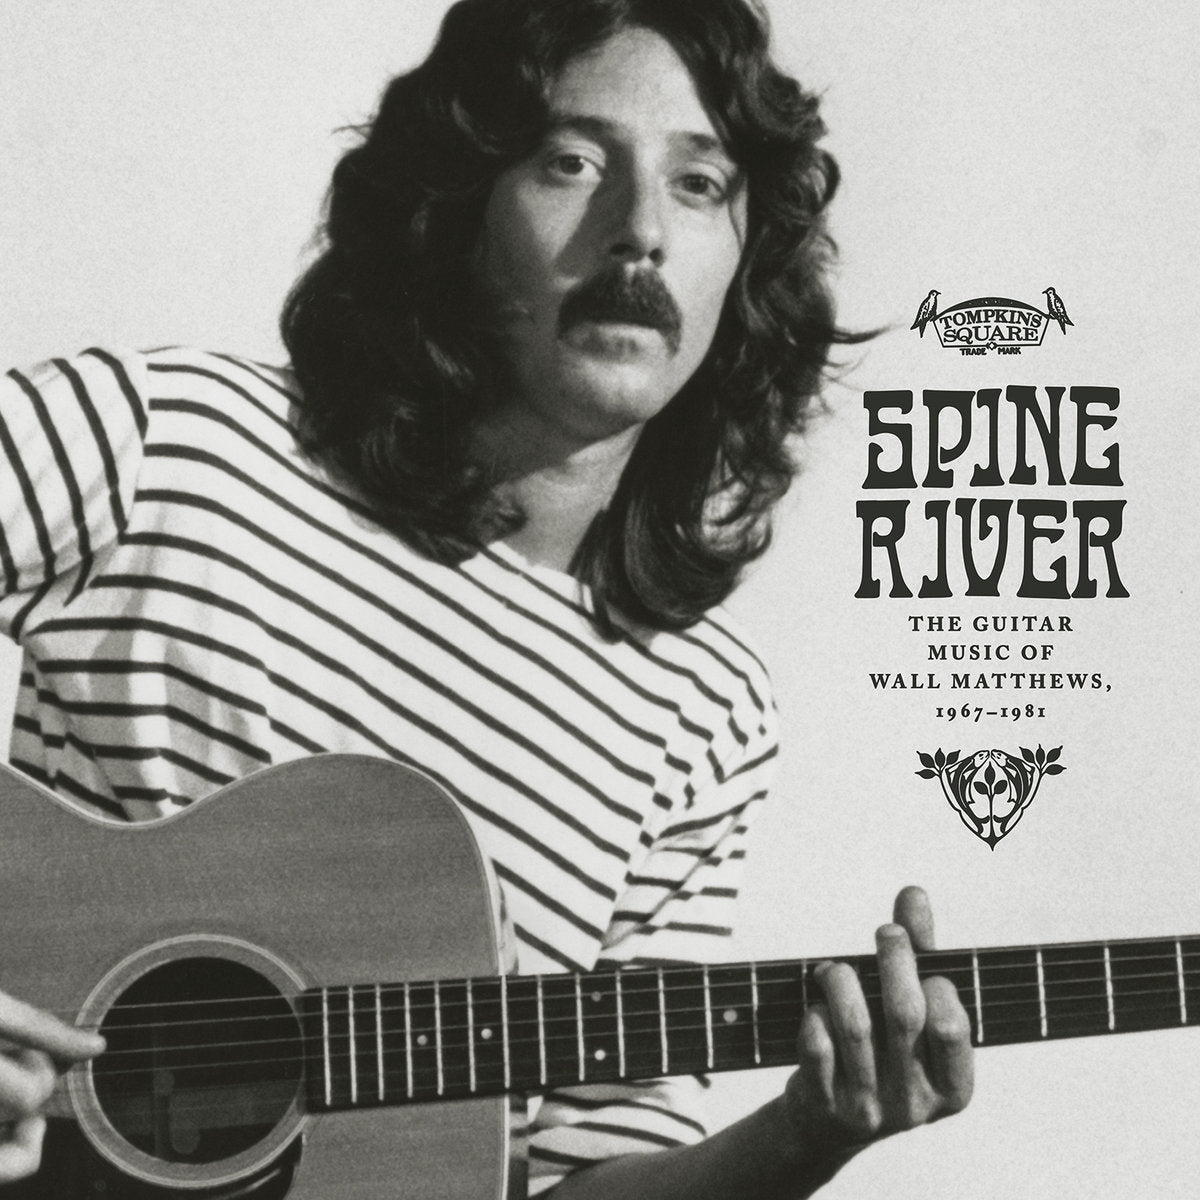 Wall Matthews - Spine River : The Guitar Music of Wall Matthews, 1967-1981 Vinyl